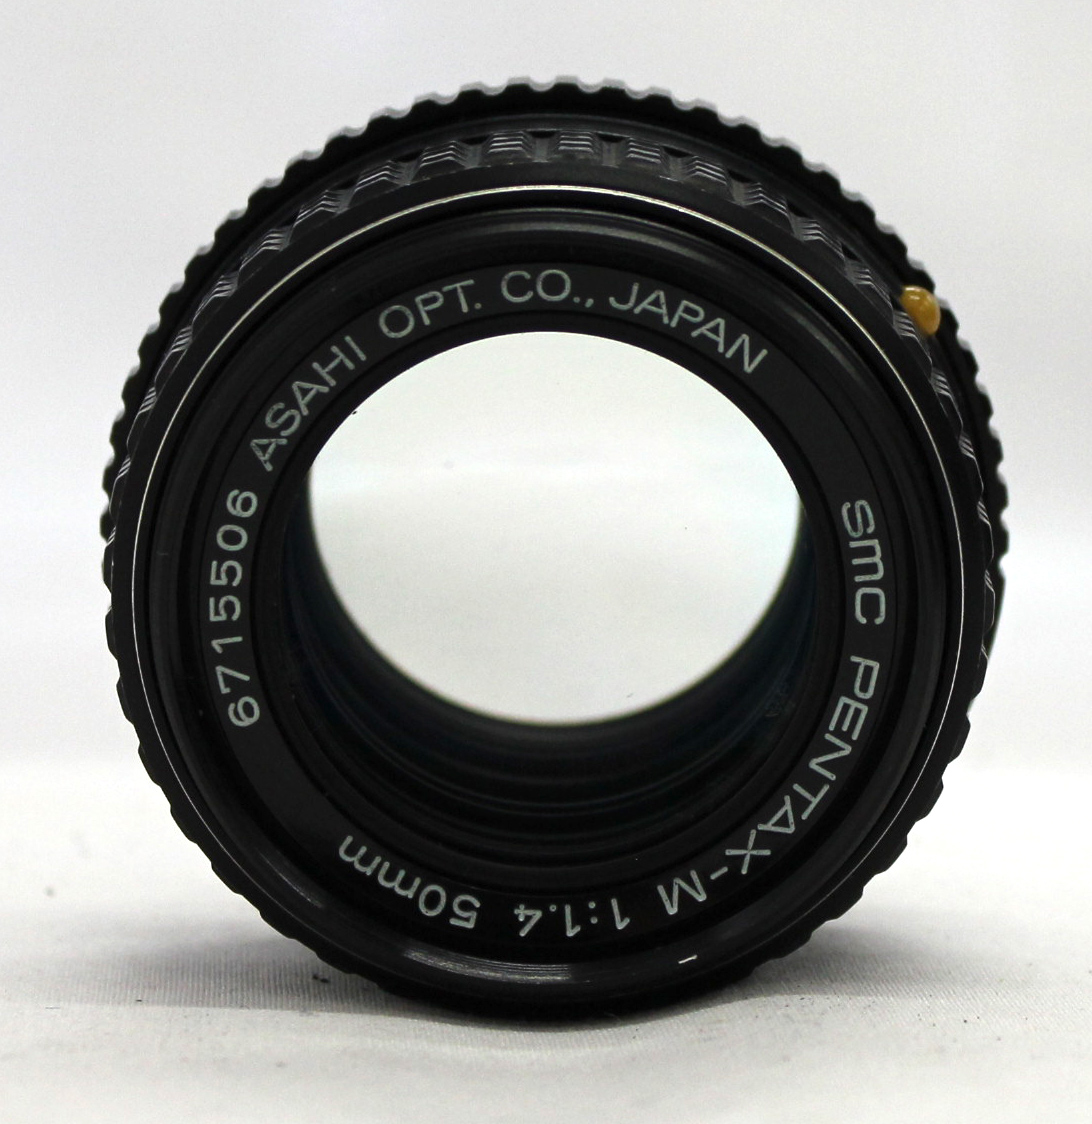 Pentax MX SLR 35mm Film Camera with SMC Pentax-M 50mm F/1.4 from Japan  (C1603) | Big Fish J-Camera (Big Fish J-Shop)